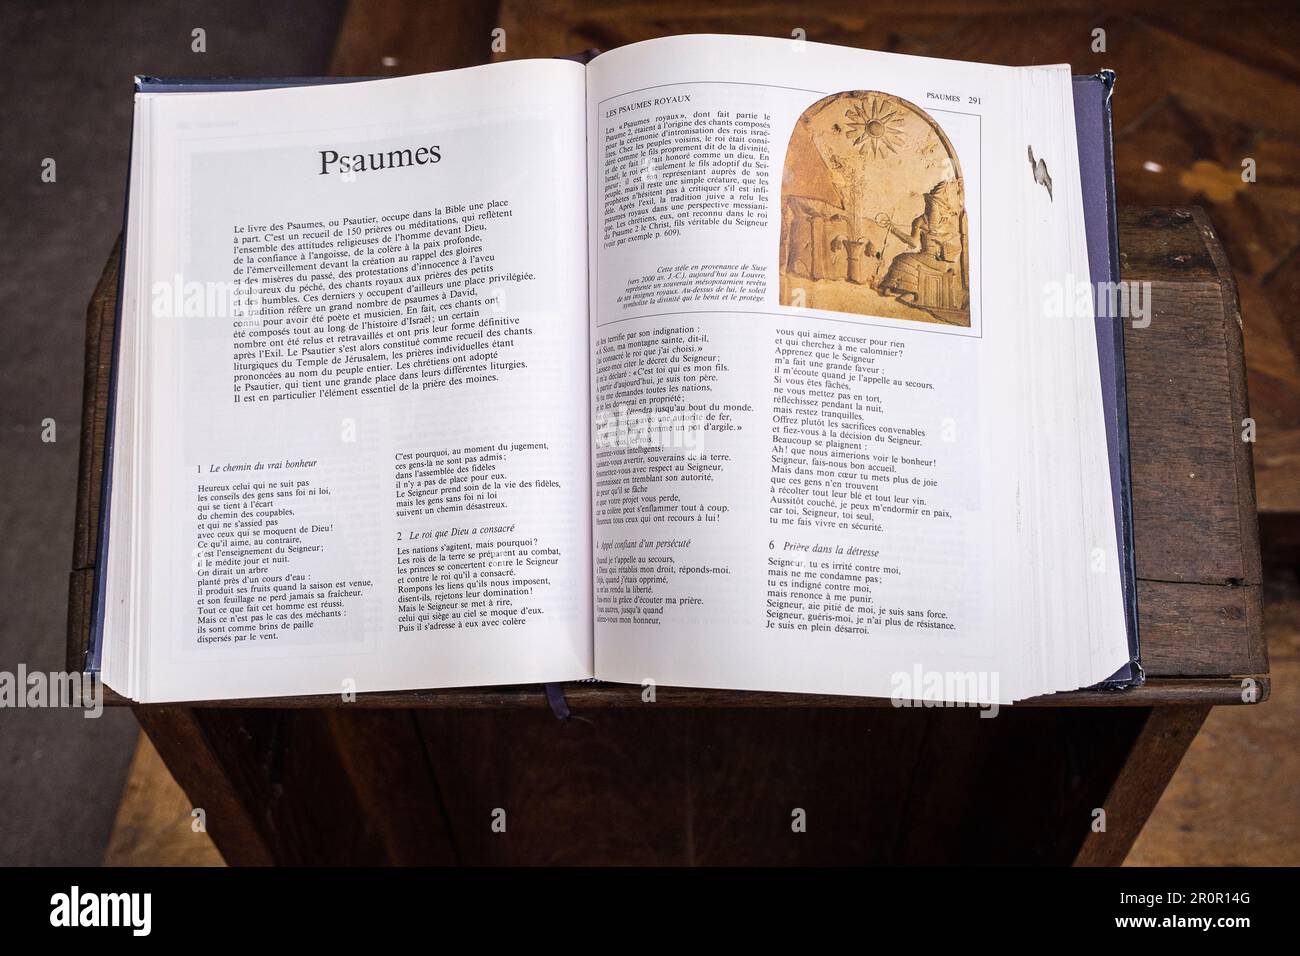 Das alte Testament wurde auf einem Schreibtisch eröffnet - Psalms| Ancien testament ouvert sur un pupitre - Psaumes Stockfoto